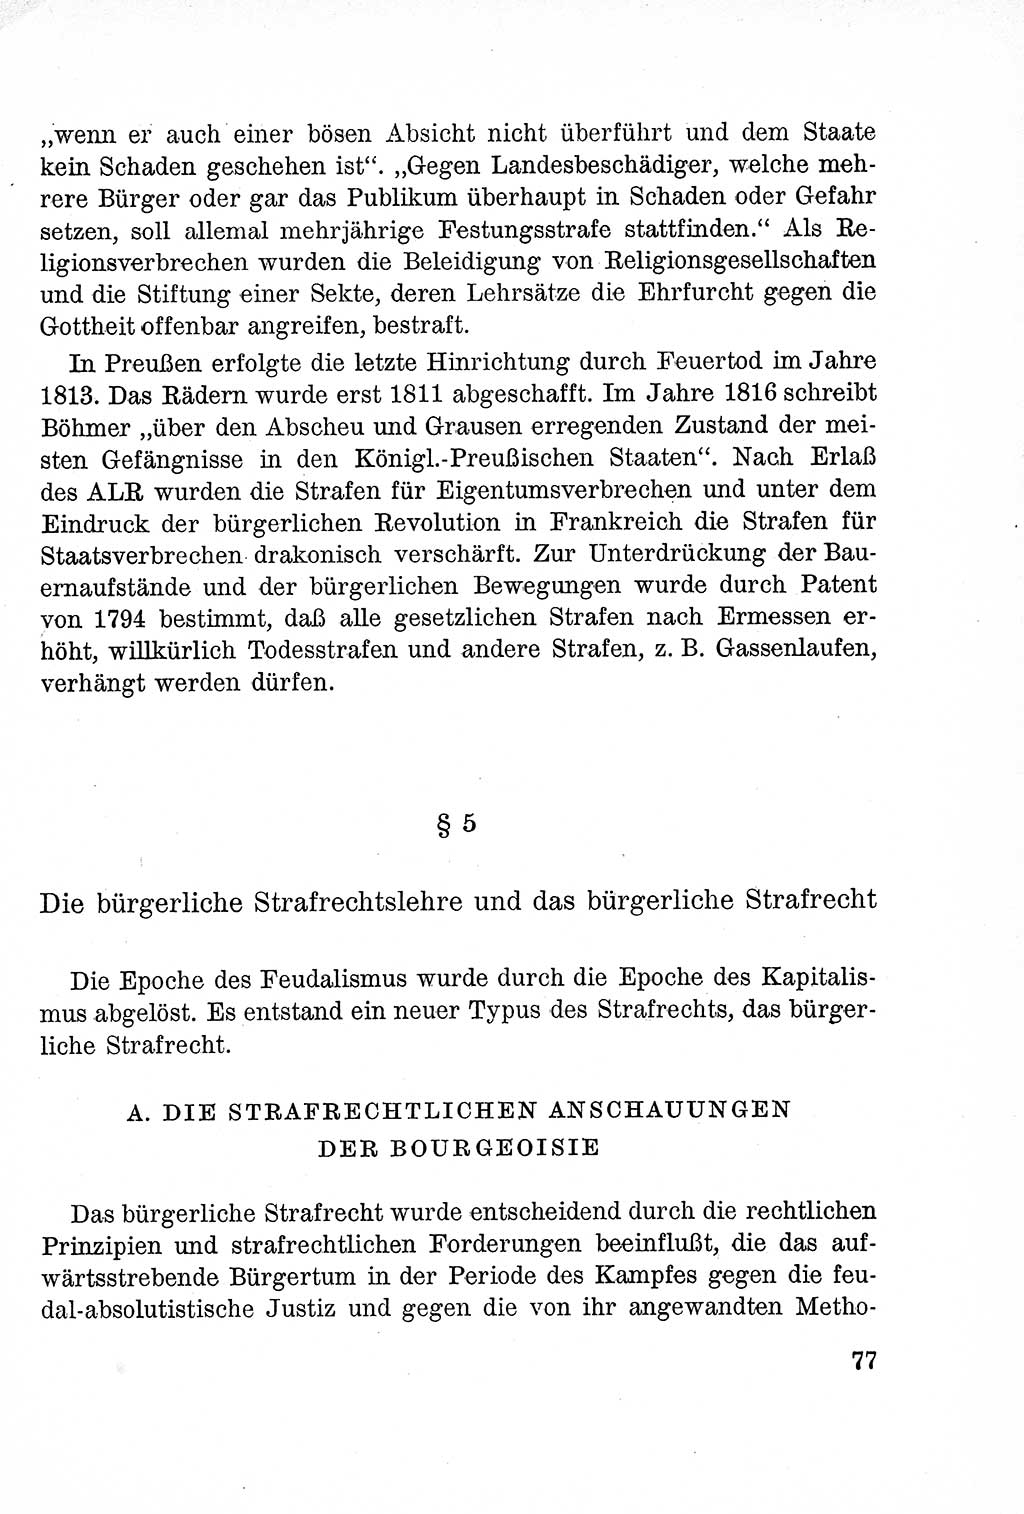 Lehrbuch des Strafrechts der Deutschen Demokratischen Republik (DDR), Allgemeiner Teil 1957, Seite 77 (Lb. Strafr. DDR AT 1957, S. 77)